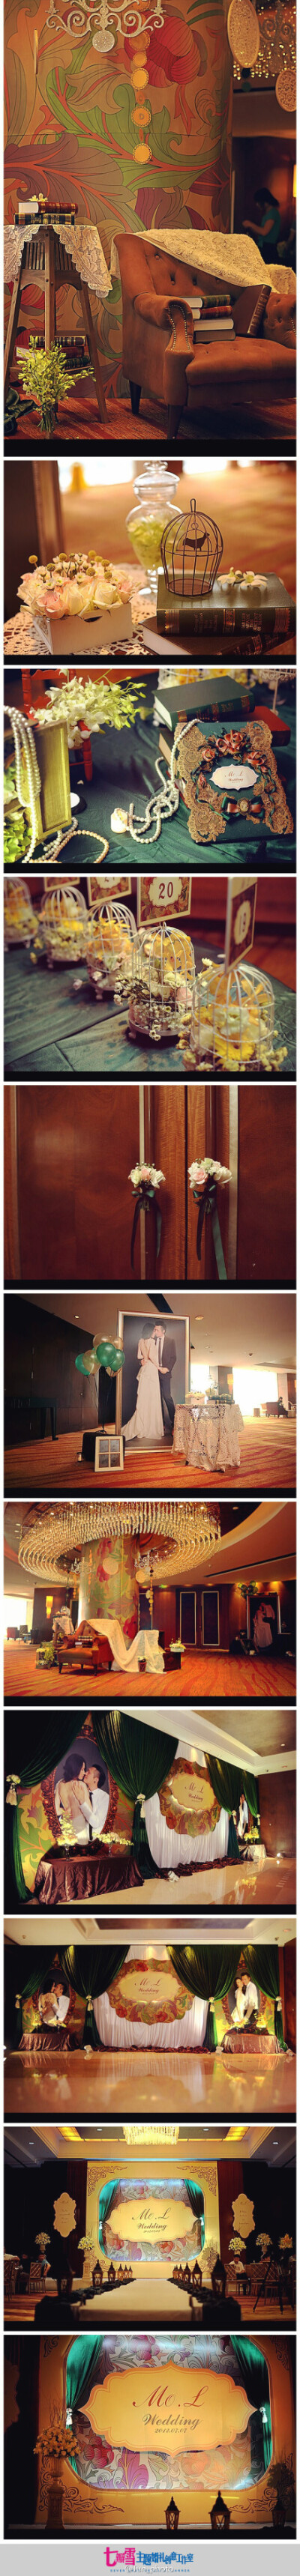 2012.7.7 ，很不错的复古风格婚礼案例。（策划：@七瓣雪主题婚礼创意工作室 分享：@Jun_photo ）